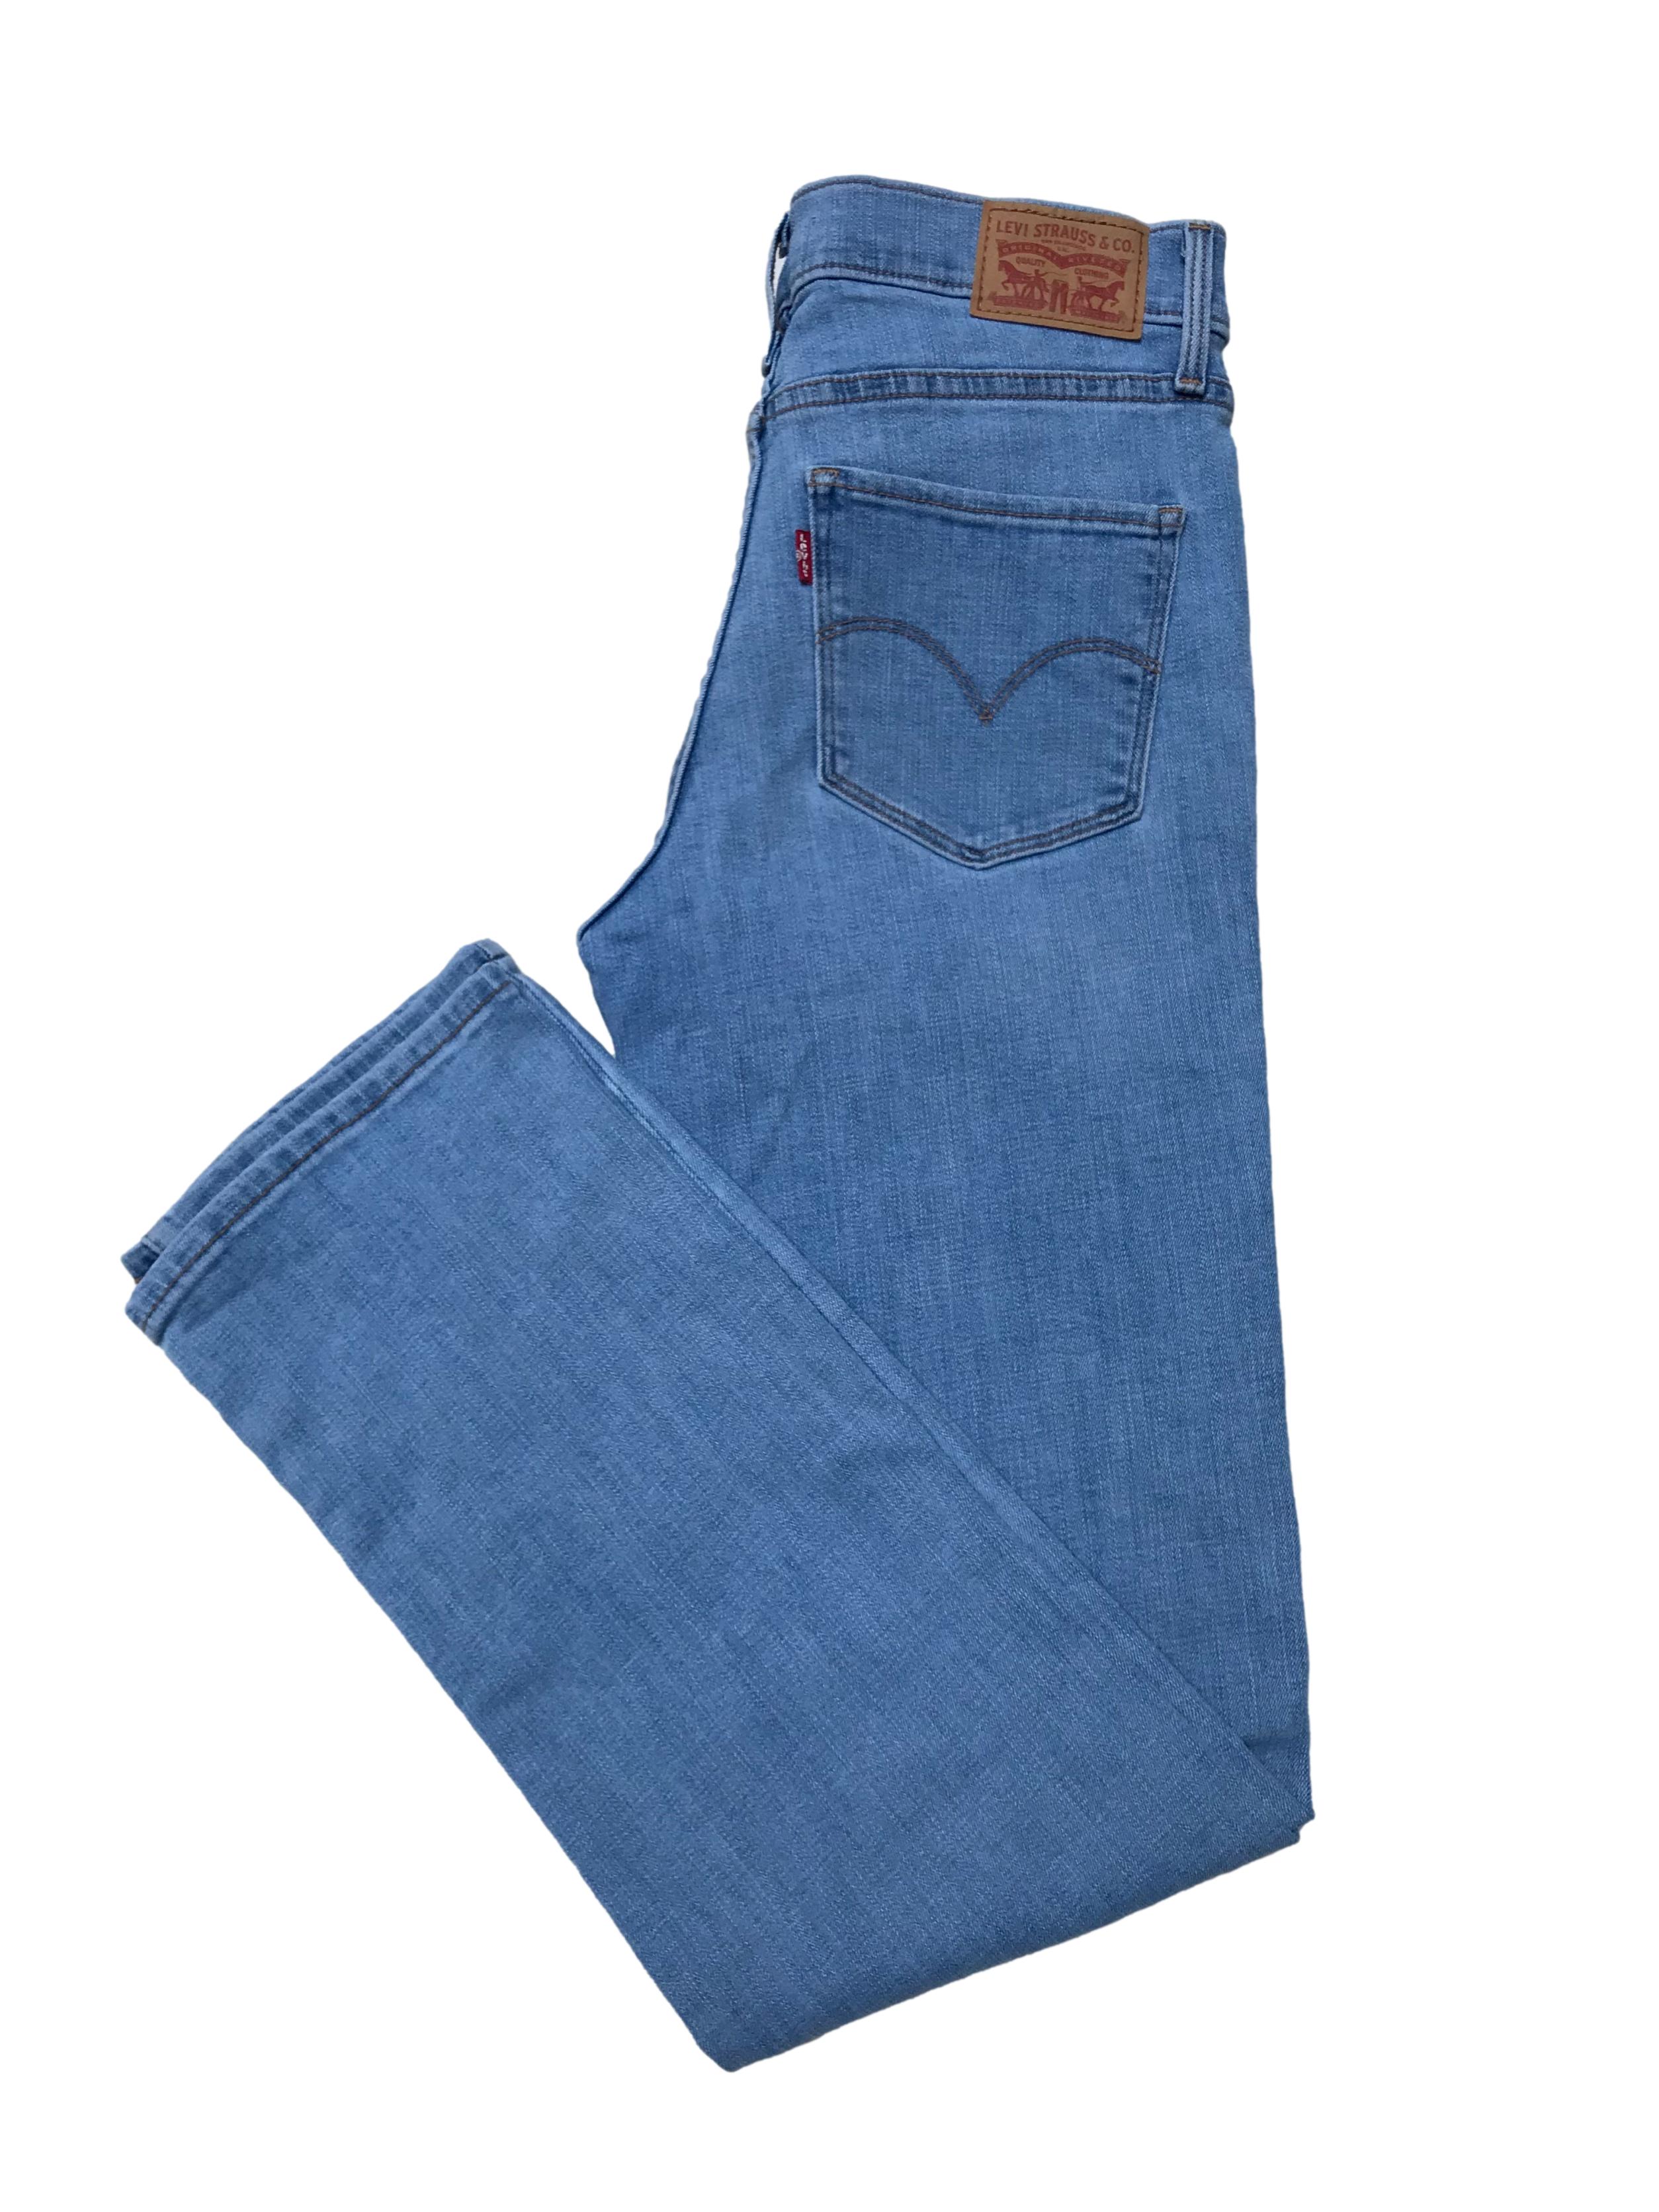 Jean Levi´s 314 celeste lavado, 80% algodón stretch, pierna recta, tiro medio, modelo 5 bolsillos. Cintura 72cm Largo 100cm. Precio original S/ 199